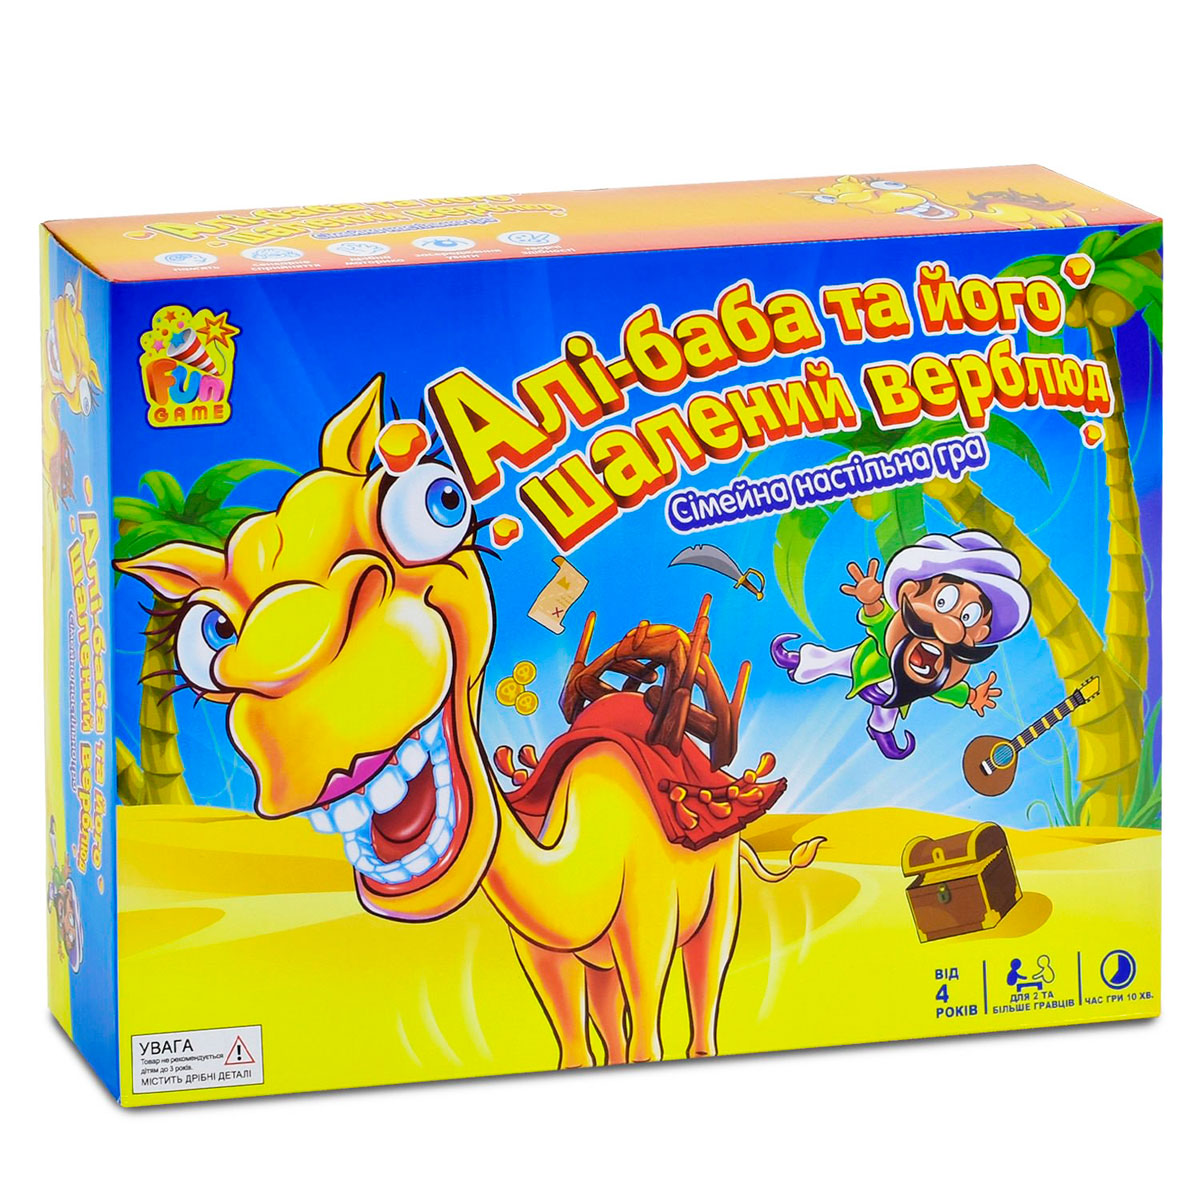 Настольная игра 'Али-Баба и его безумный верблюд'